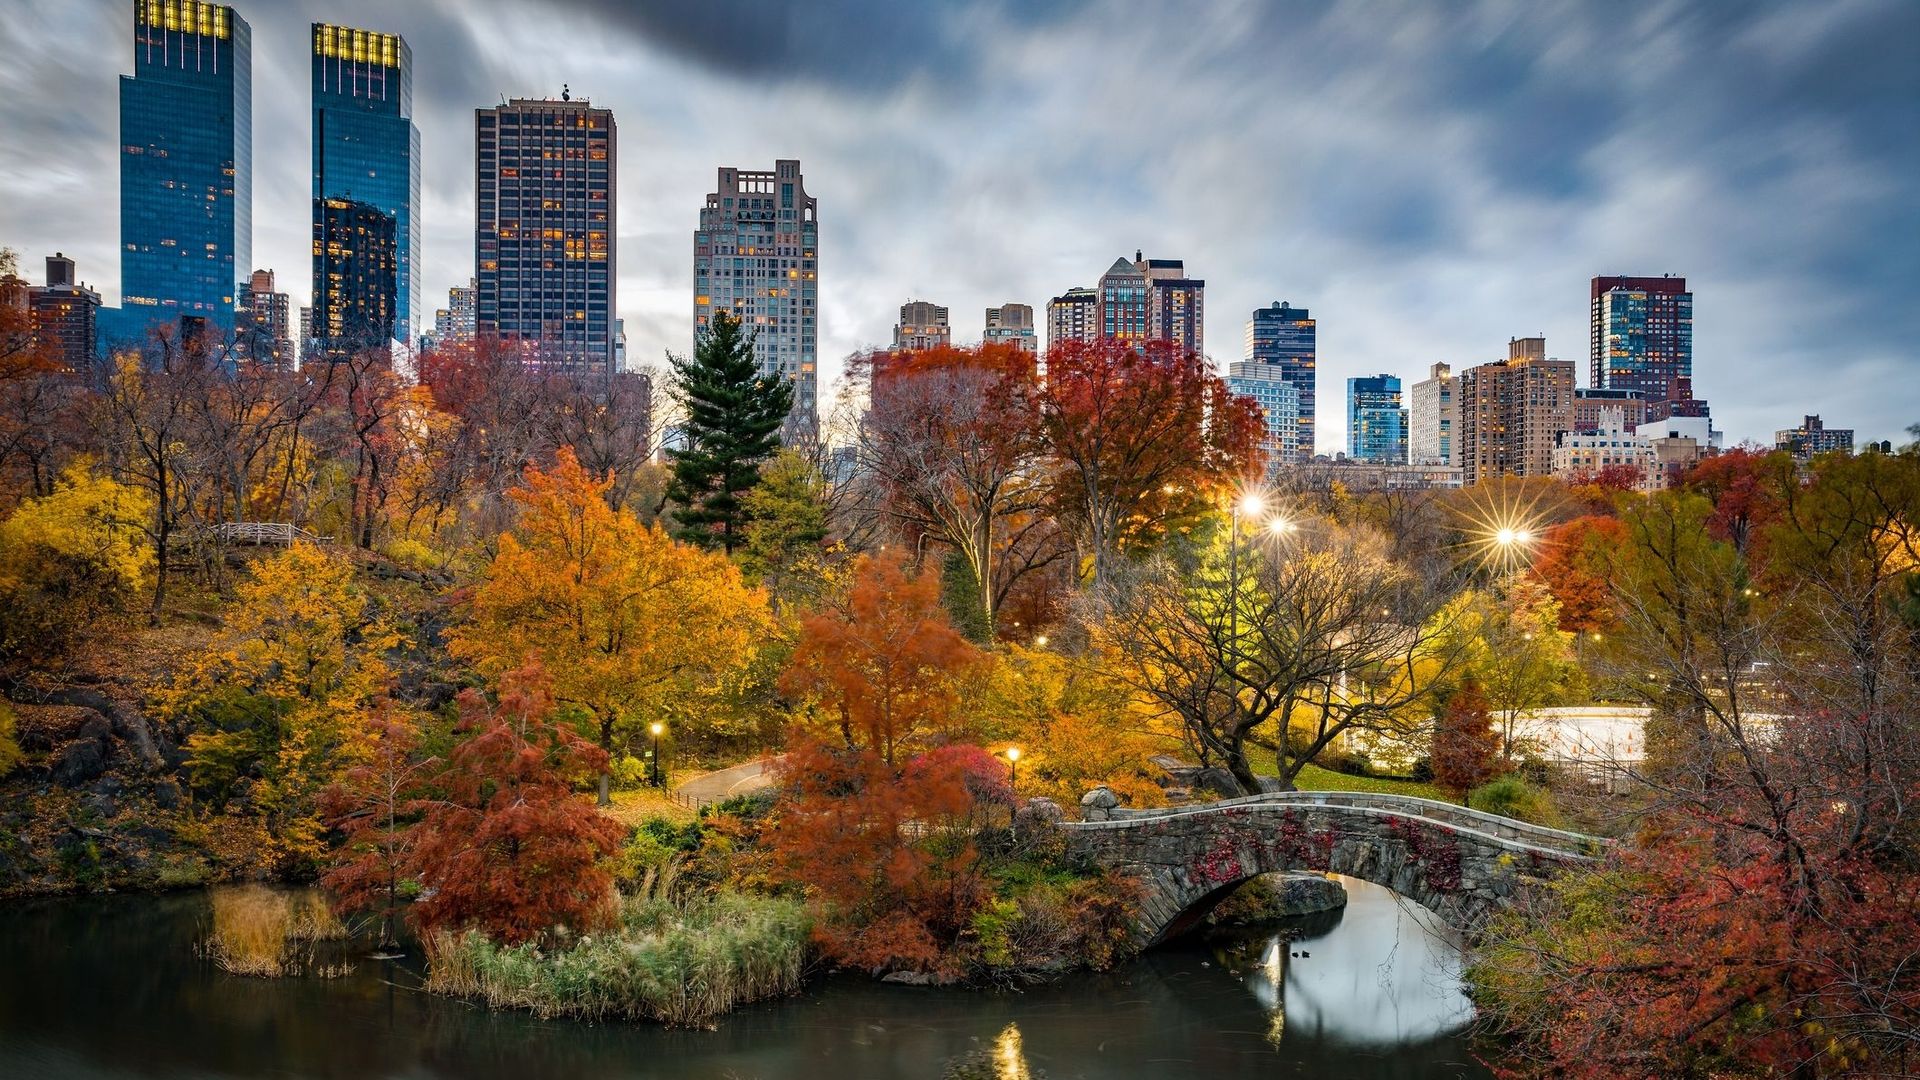 New York est la ville la plus instagrammable en automne.